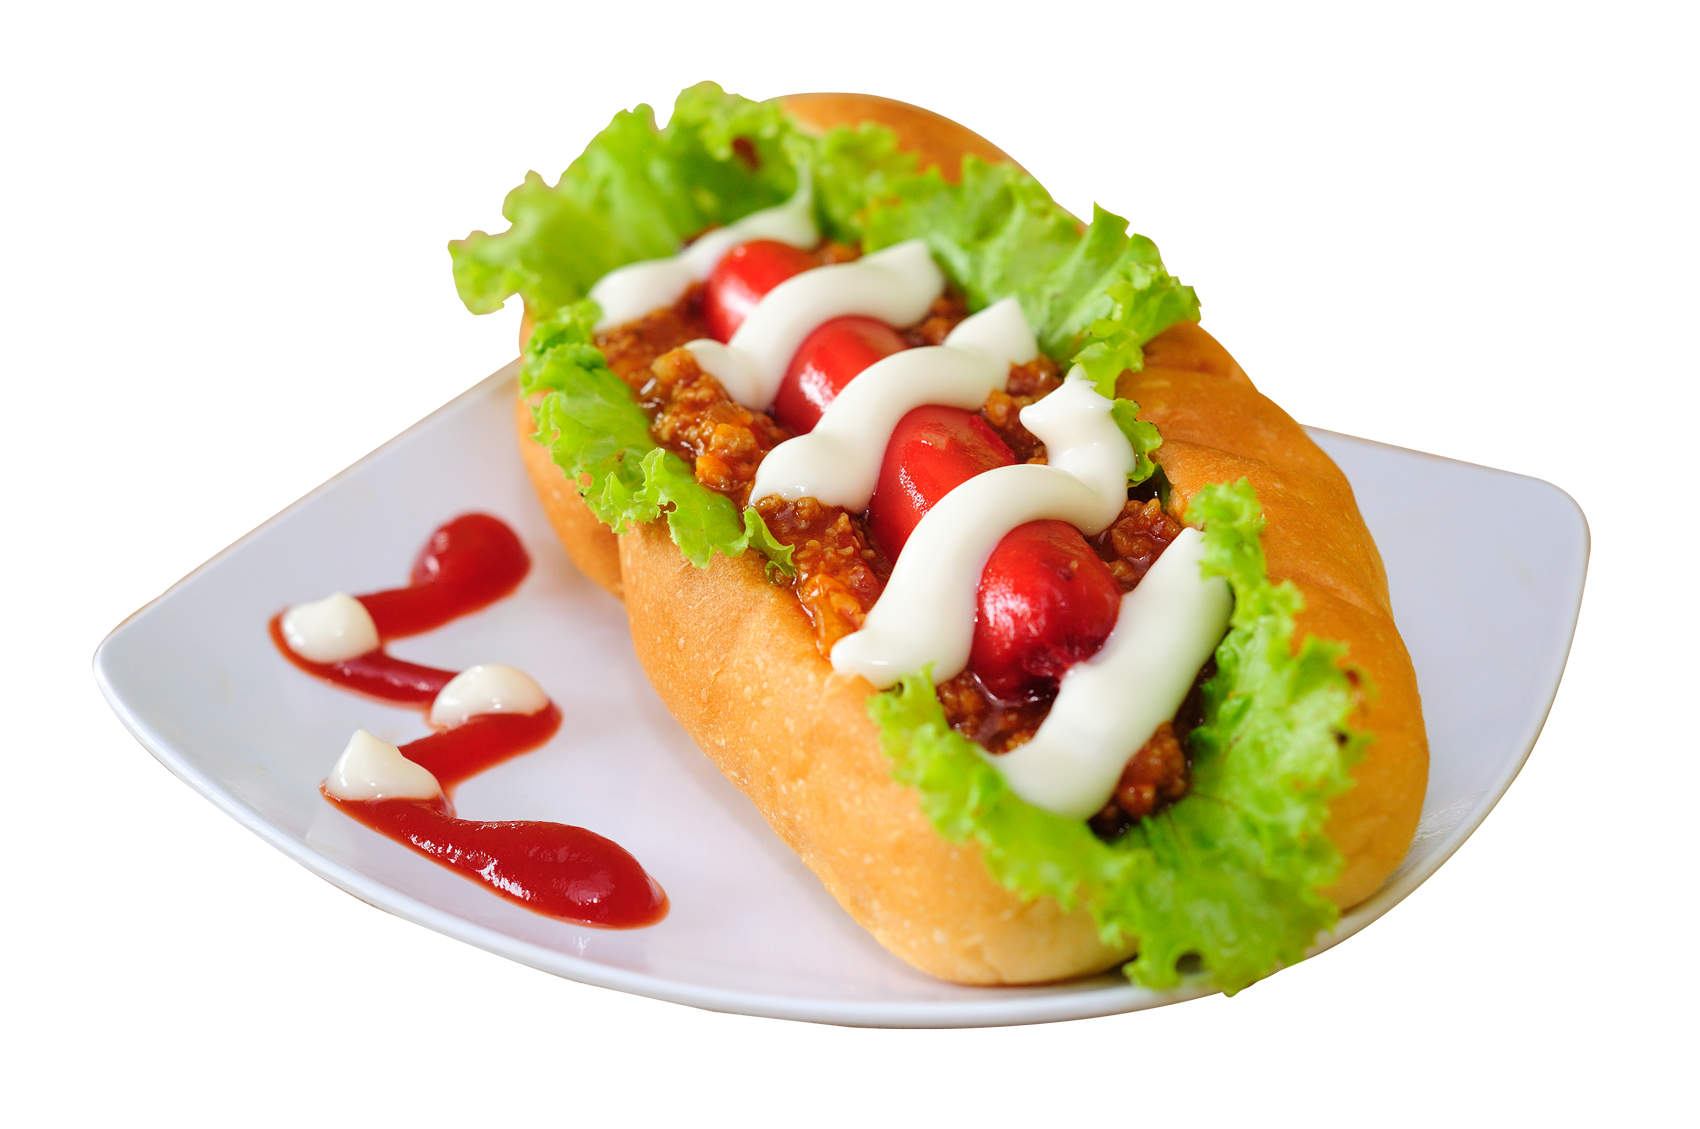 Hot Dog Transparent PNG Image